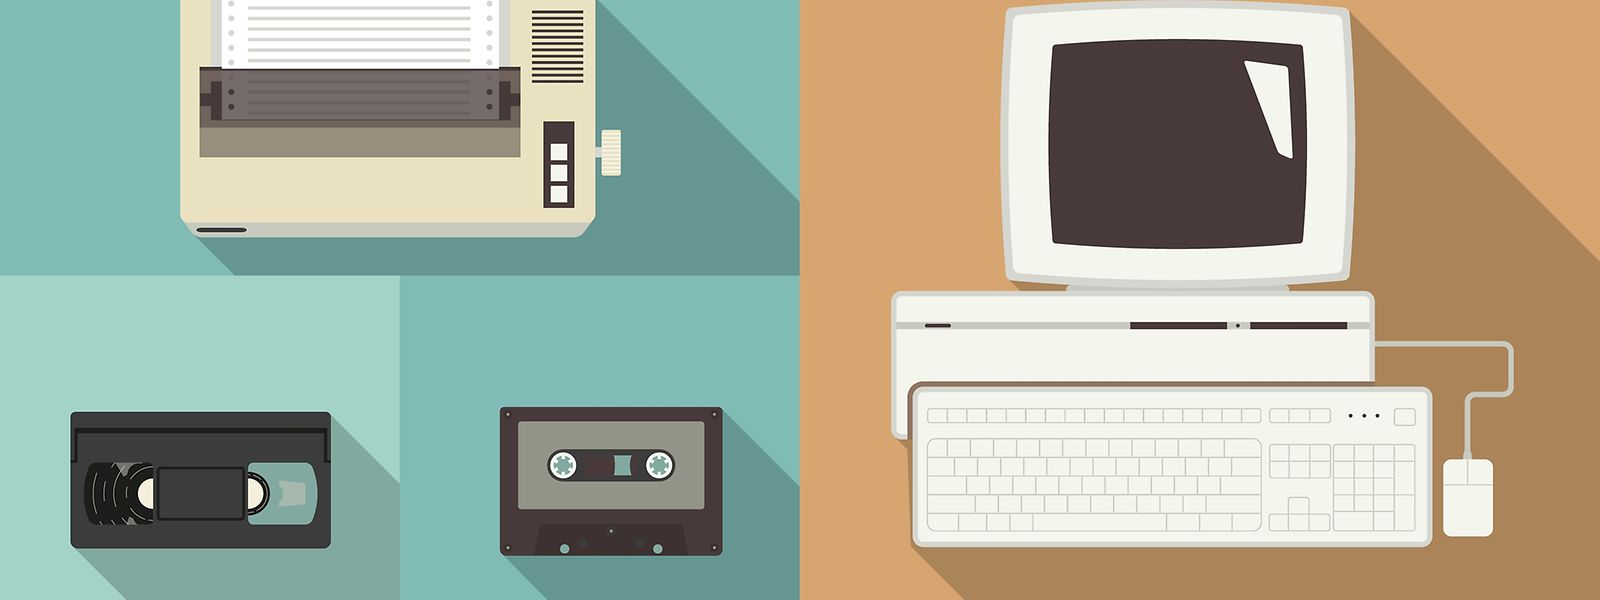 Diskettenlaufwerke und Röhrenbildschirme sind schon länger Vergangenheit. Den Computermäusen steht der Untergang noch bevor.